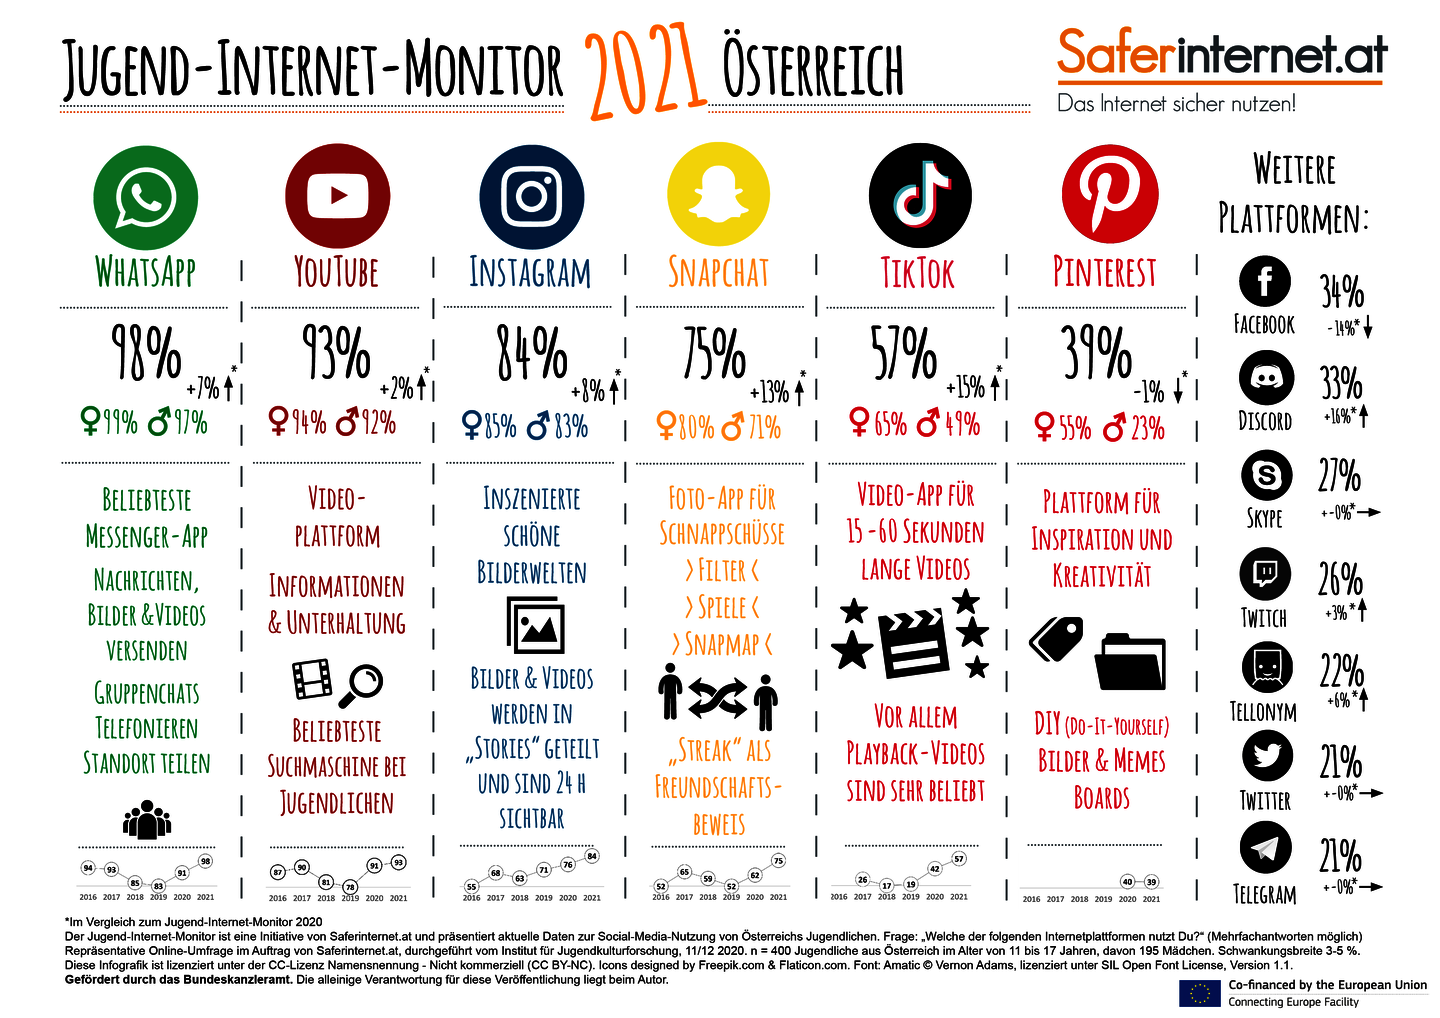 Infografik Jugend-Internet-Monitor 2021